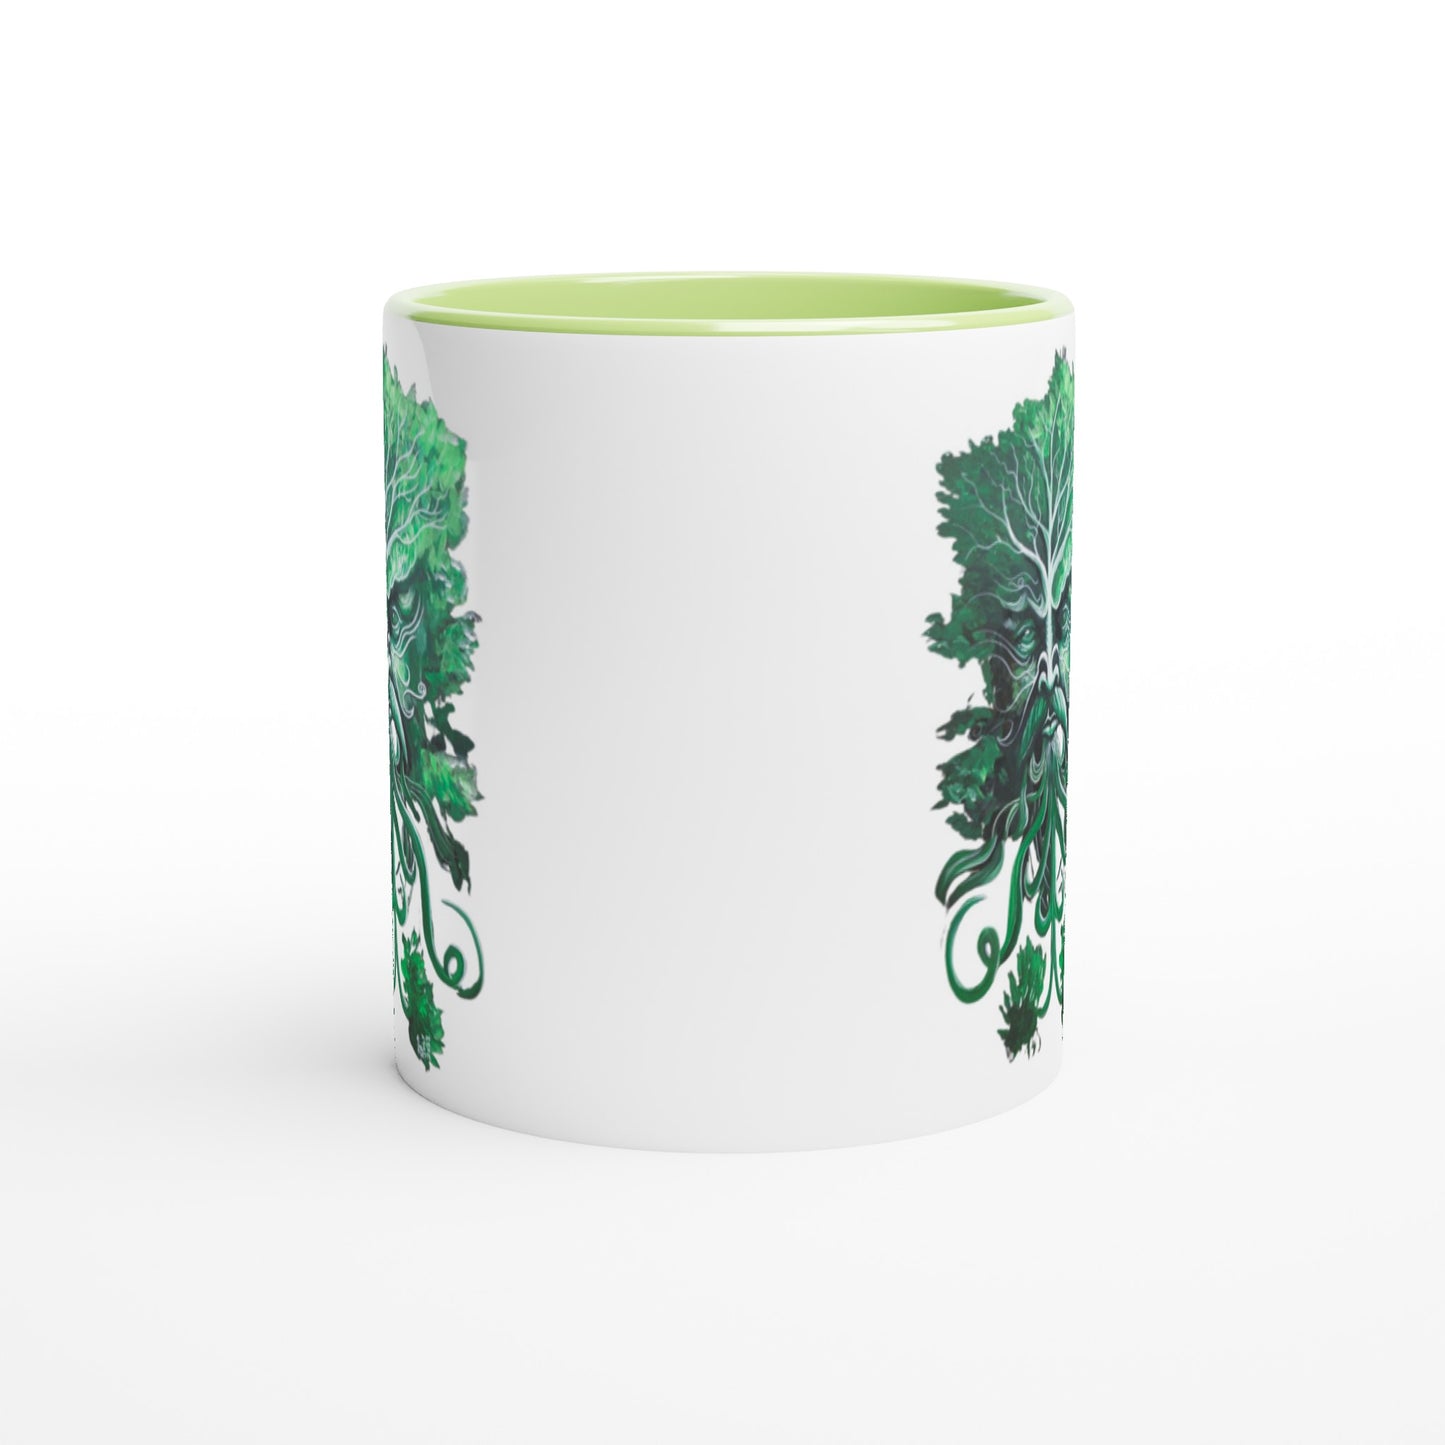 Green Man White 11oz Ceramic Mug with Color Inside